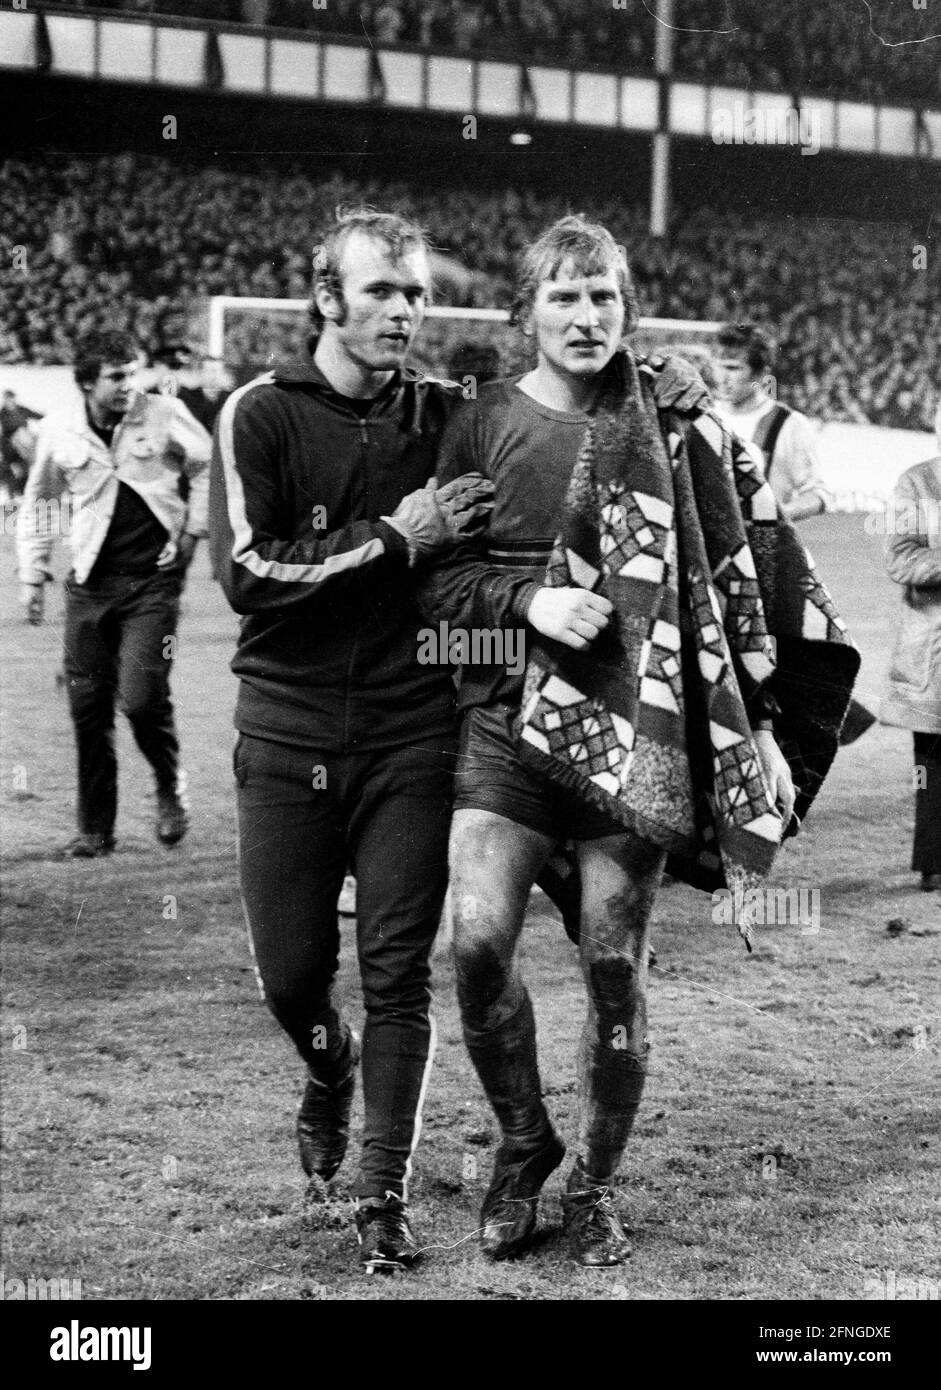 European Cup 1970/71 FC Everton - Borussia Mönchengladbach 04.11.1970 5:4 N.E. Wolfgang Kleff è consolato dal portiere sostituto Bernd Schrage. Solo per uso giornalistico! Solo per uso editoriale! [traduzione automatizzata] Foto Stock